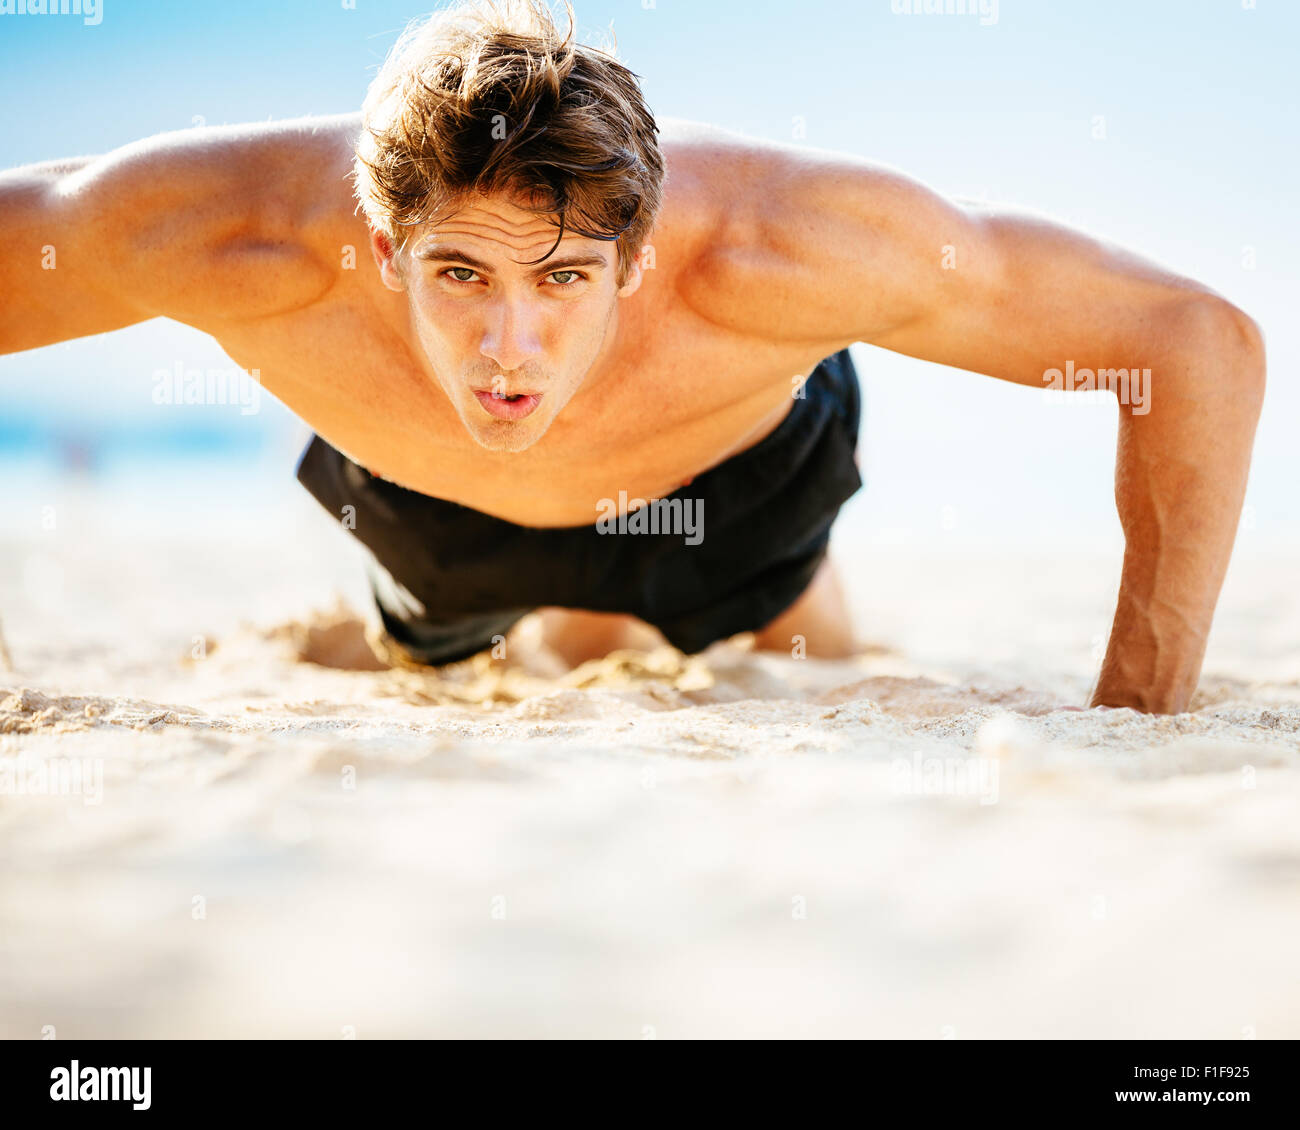 Passen Sie jungen Mann Liegestütze am Strand zu tun. Training im freien Strand. Hübscher Junge Fitness Mann ausüben. Sport und einen aktiven Lebensstil Stockfoto